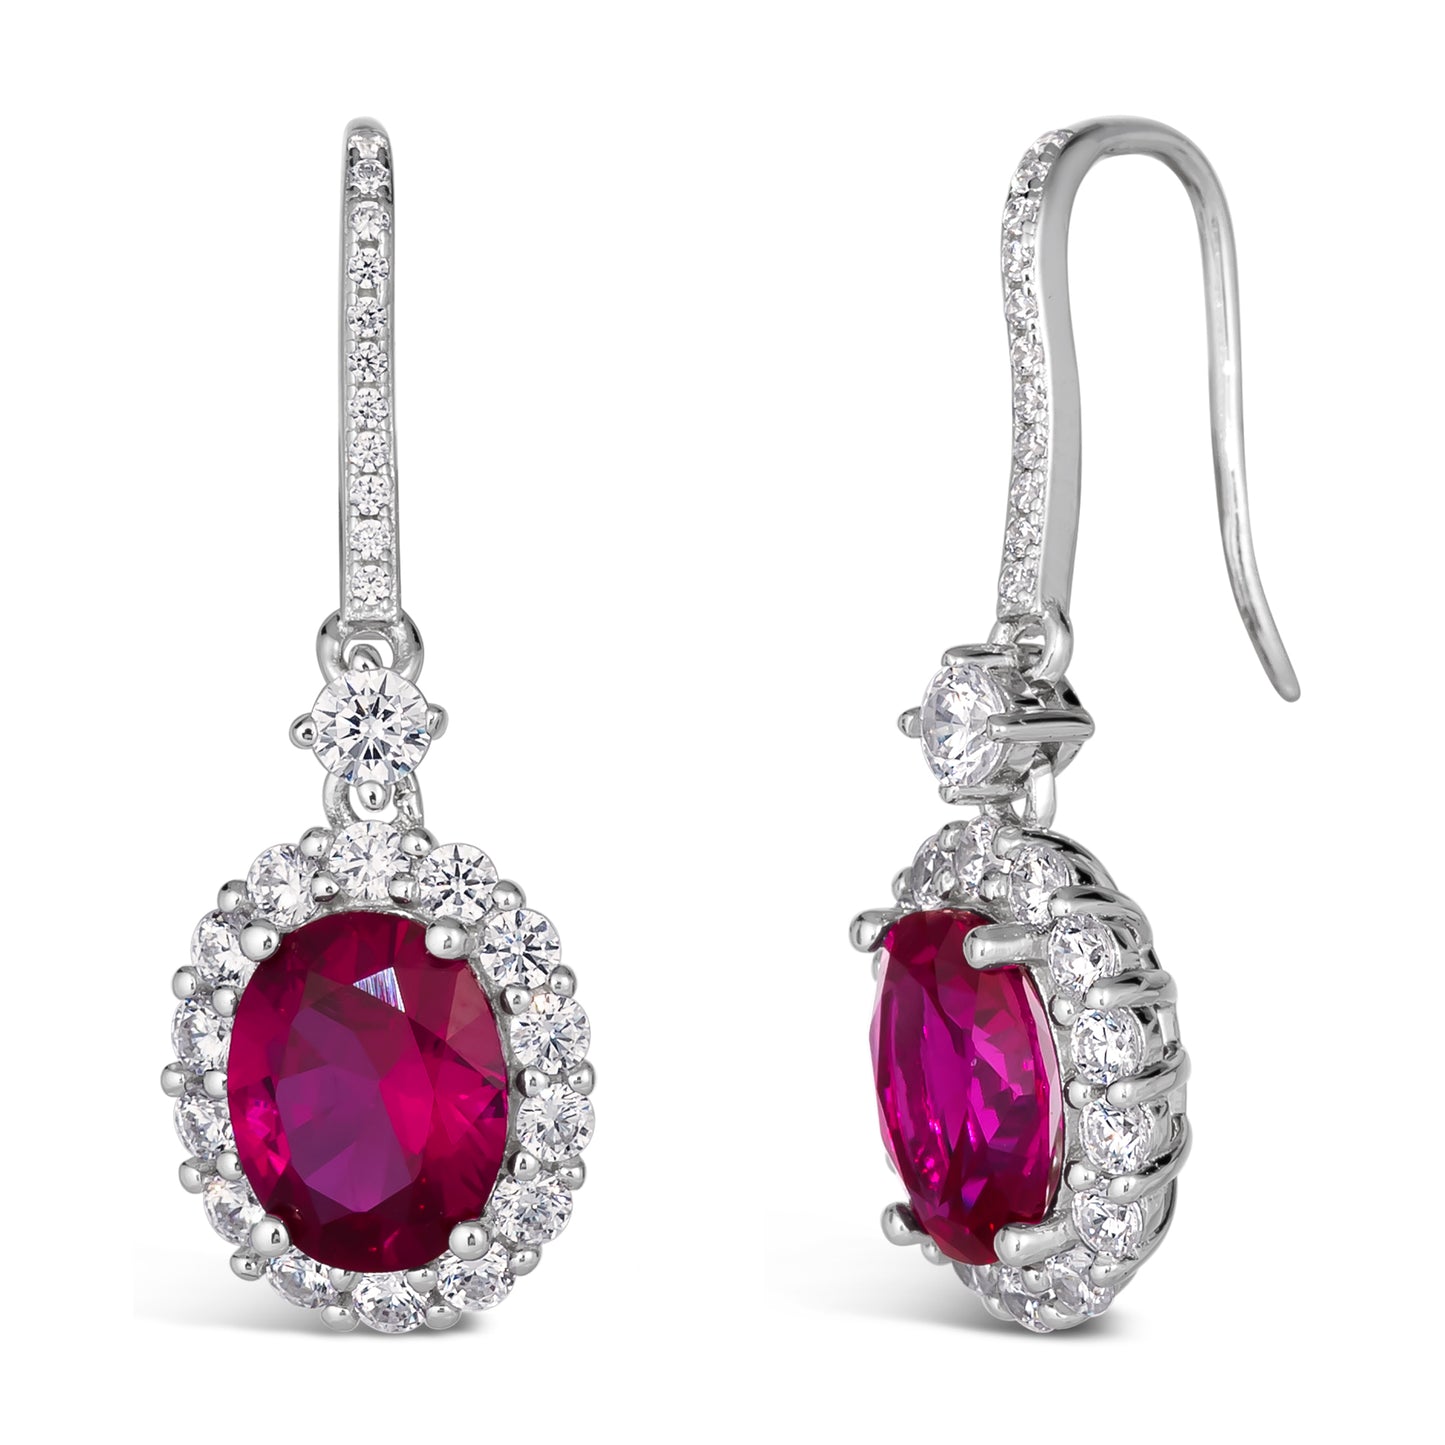 Kennedy Oval Crystalline Earrings